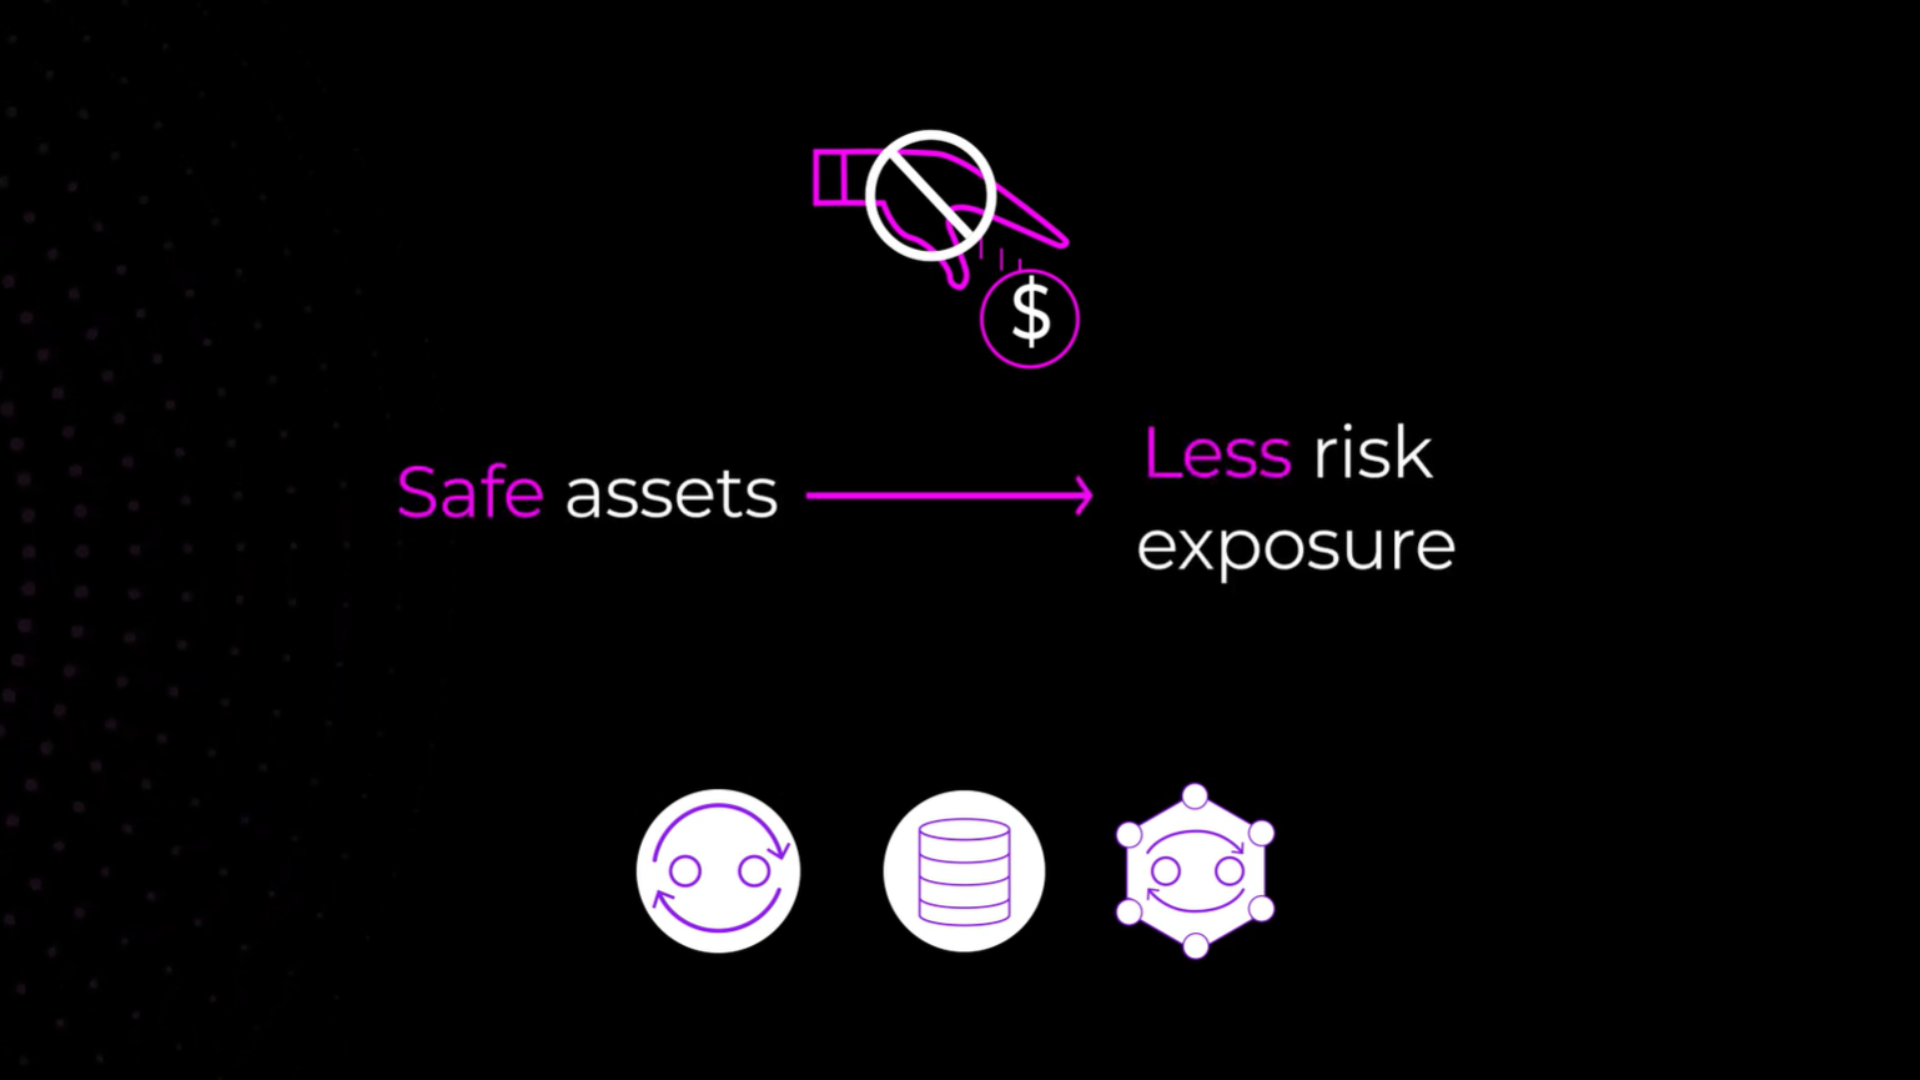 Safe assets, less risk